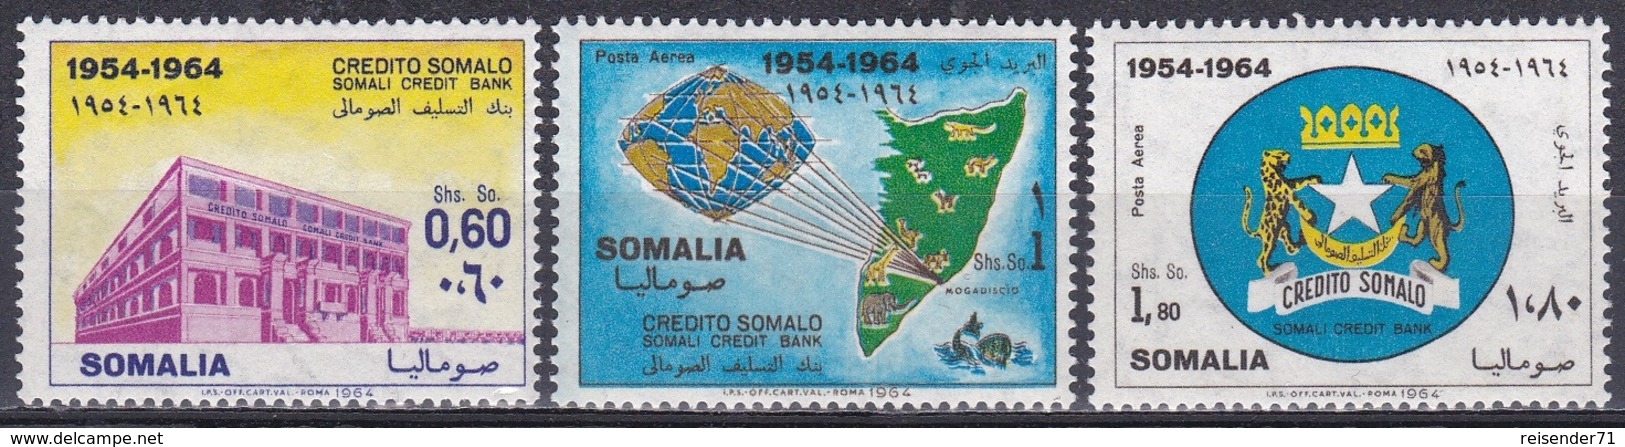 Somalia 1964 Wirtschaft Economy Bankenwesen Geldwesen Banken Bank Wappen Arms Landkarten Maps Kredit, Mi. 57-9 ** - Somalia (1960-...)